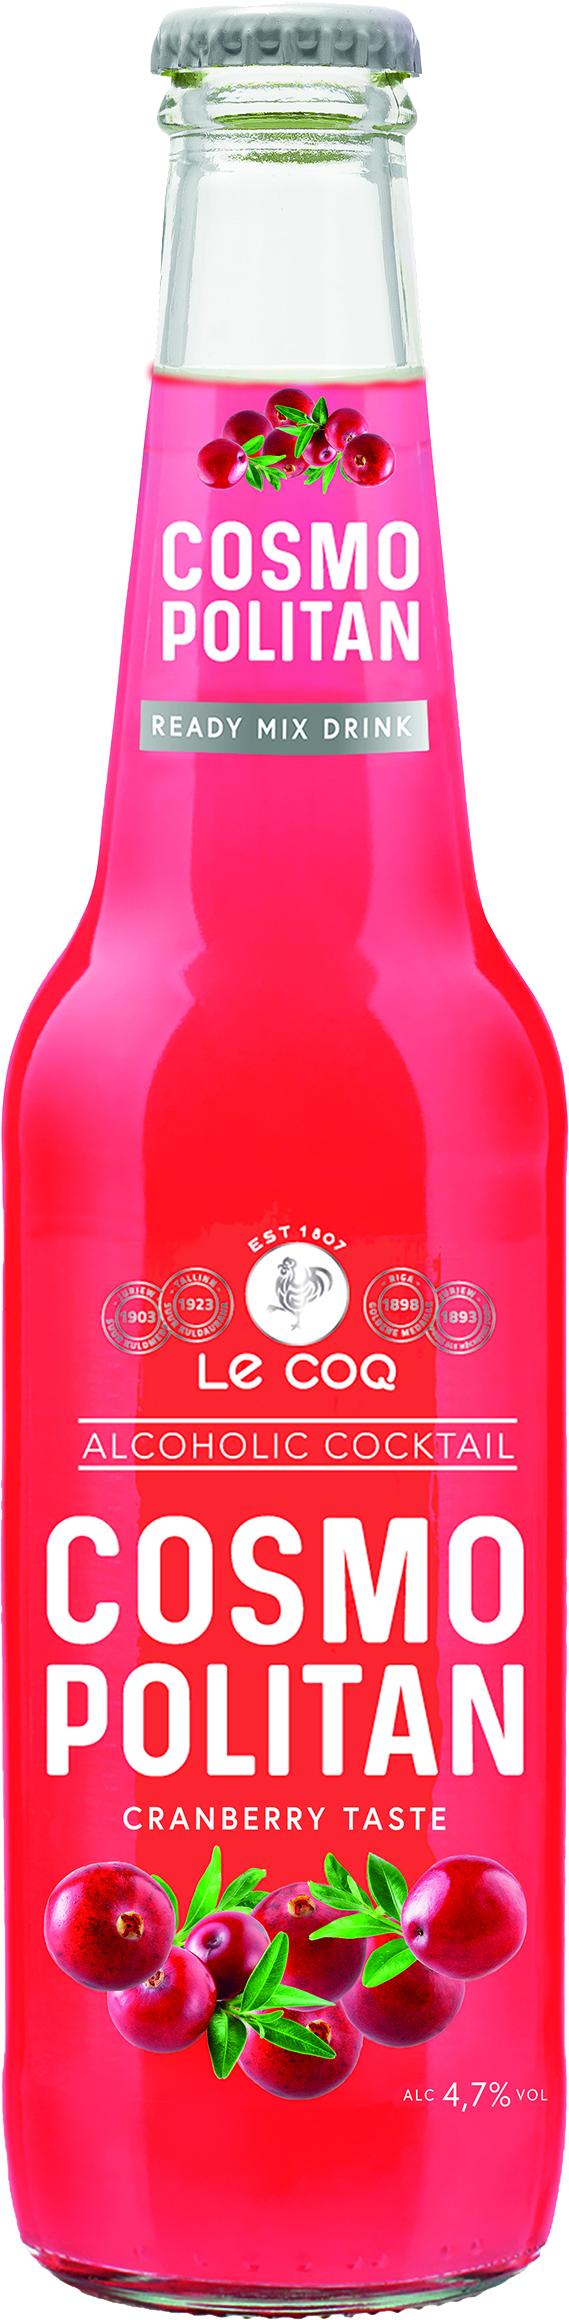 Slika za Cider-koktel LE Coq Cosmopolitan 0,33l